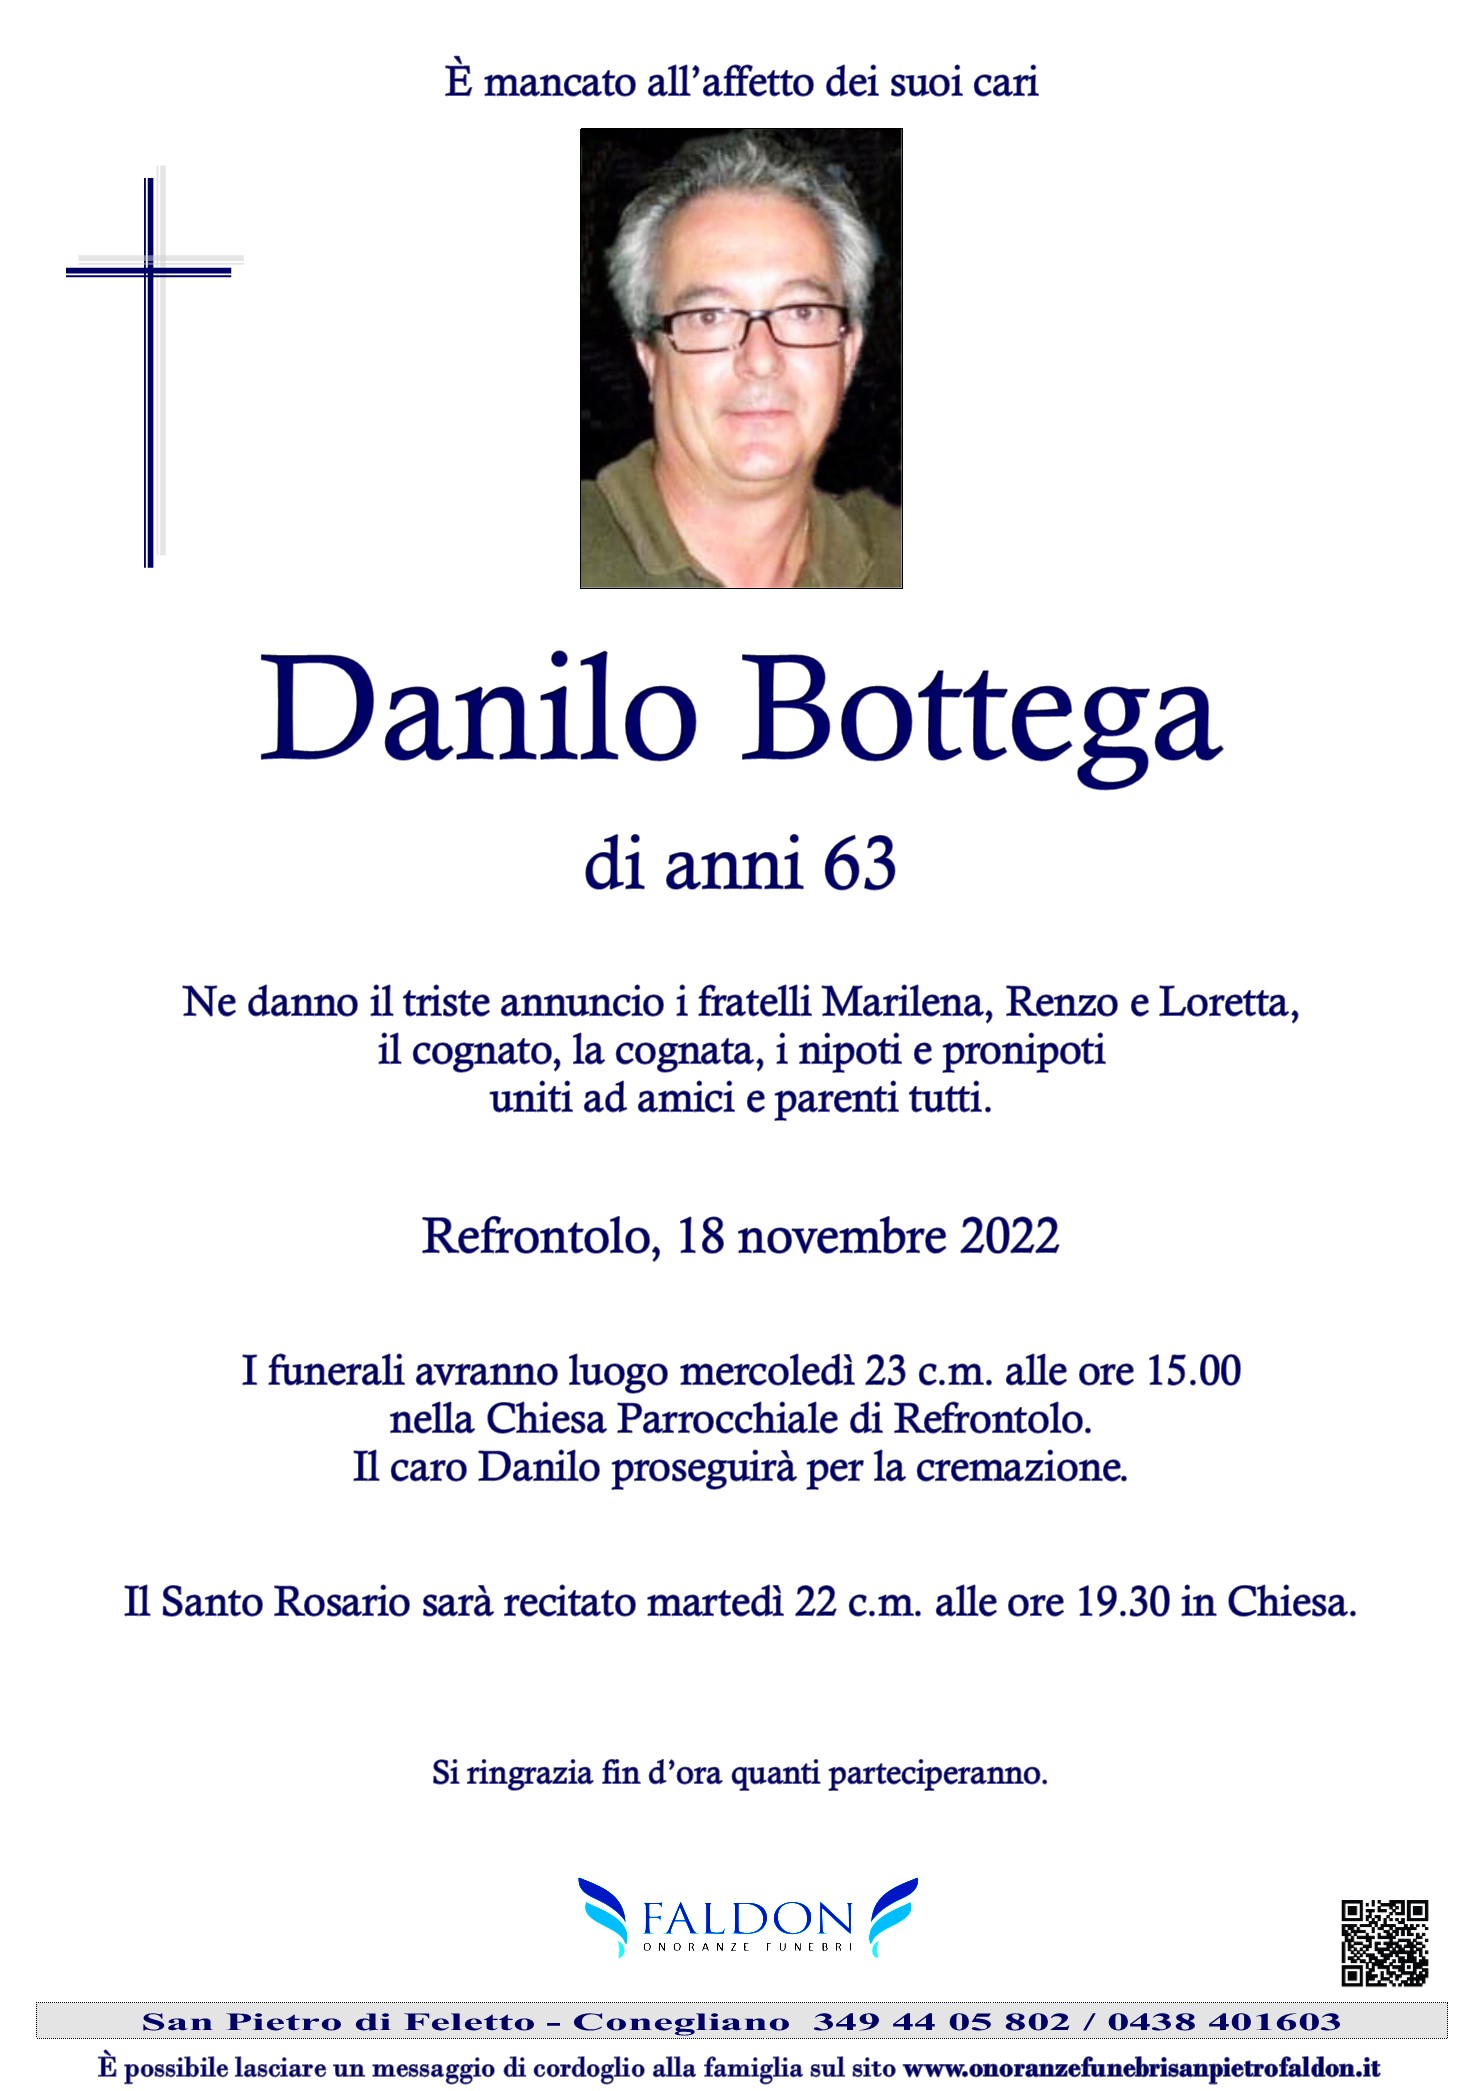 Danilo Bottega